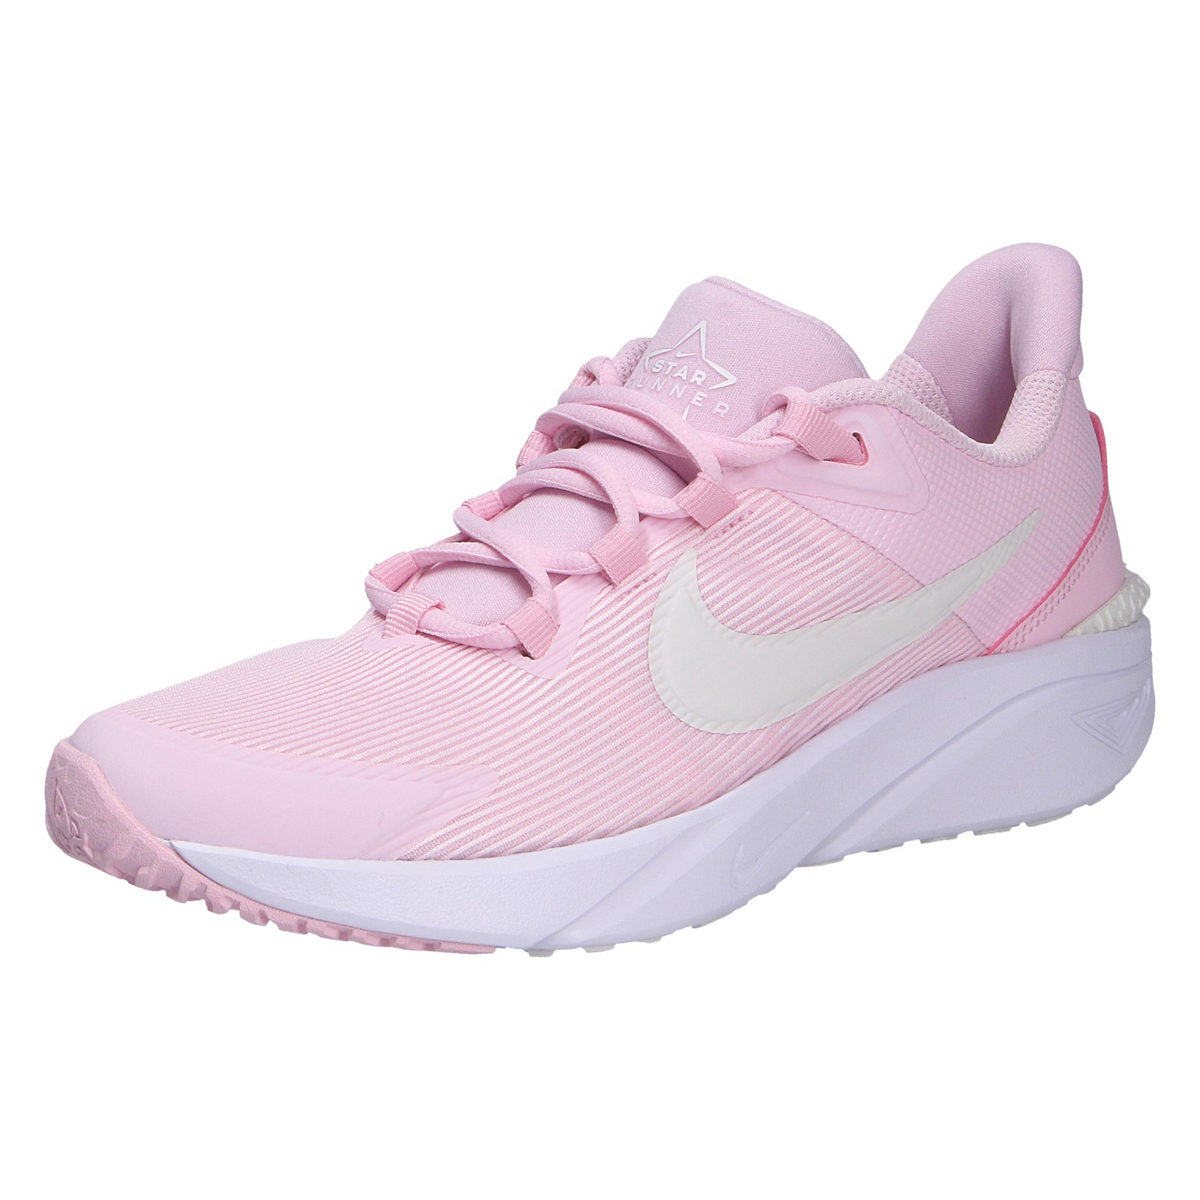 низкие кроссовки superfit halbschuh цвет rosa pink Низкие кроссовки Nike Halbschuh, цвет rosa/pink